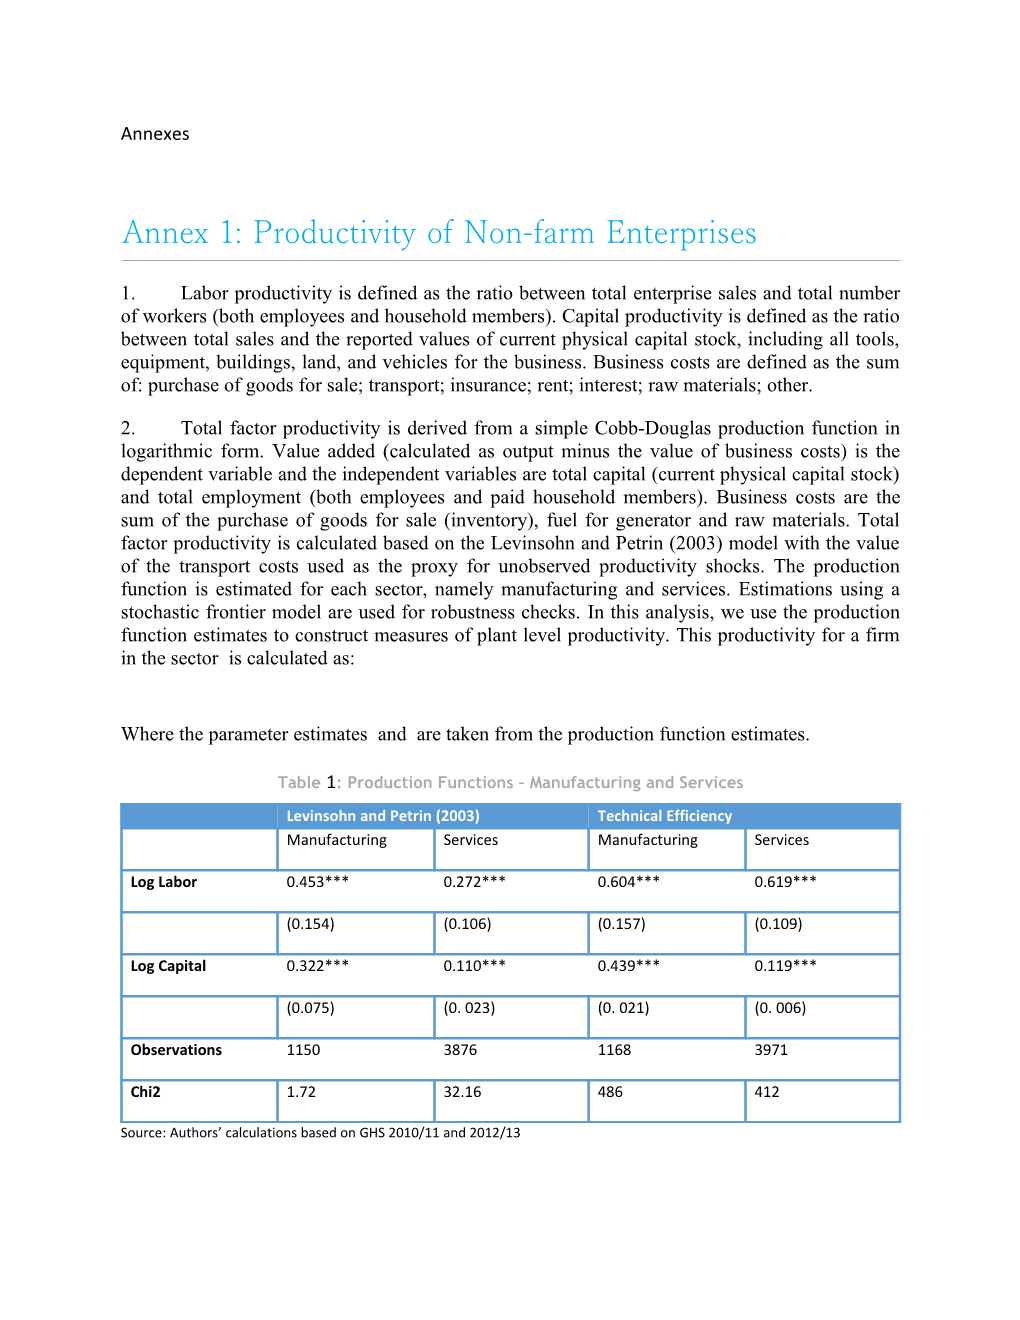 Annex 1: Productivity of Non-Farm Enterprises